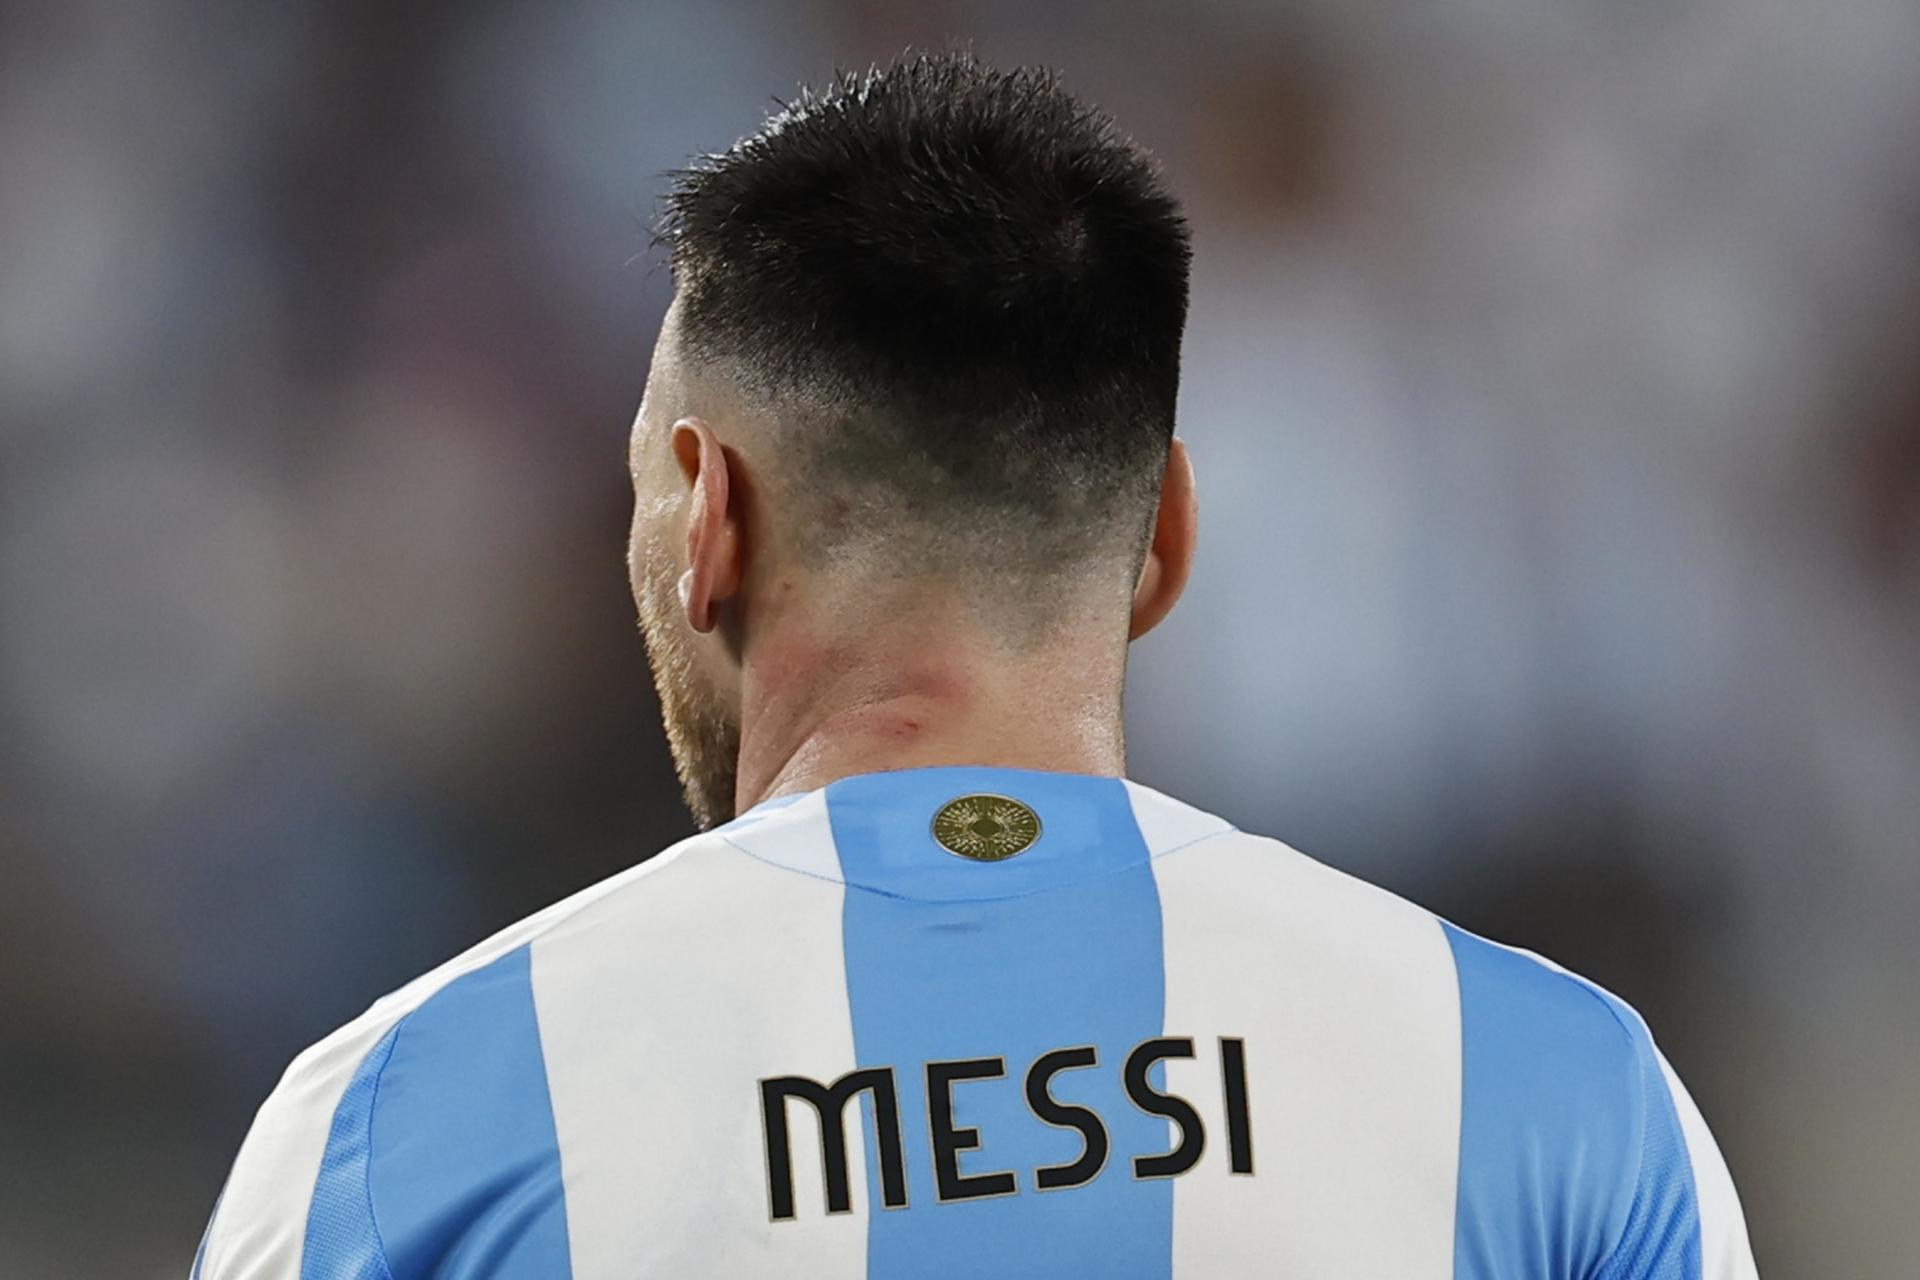 La “Albiceleste” viaja hacia Argentina con ausencias destacadas, Messi entre ellas